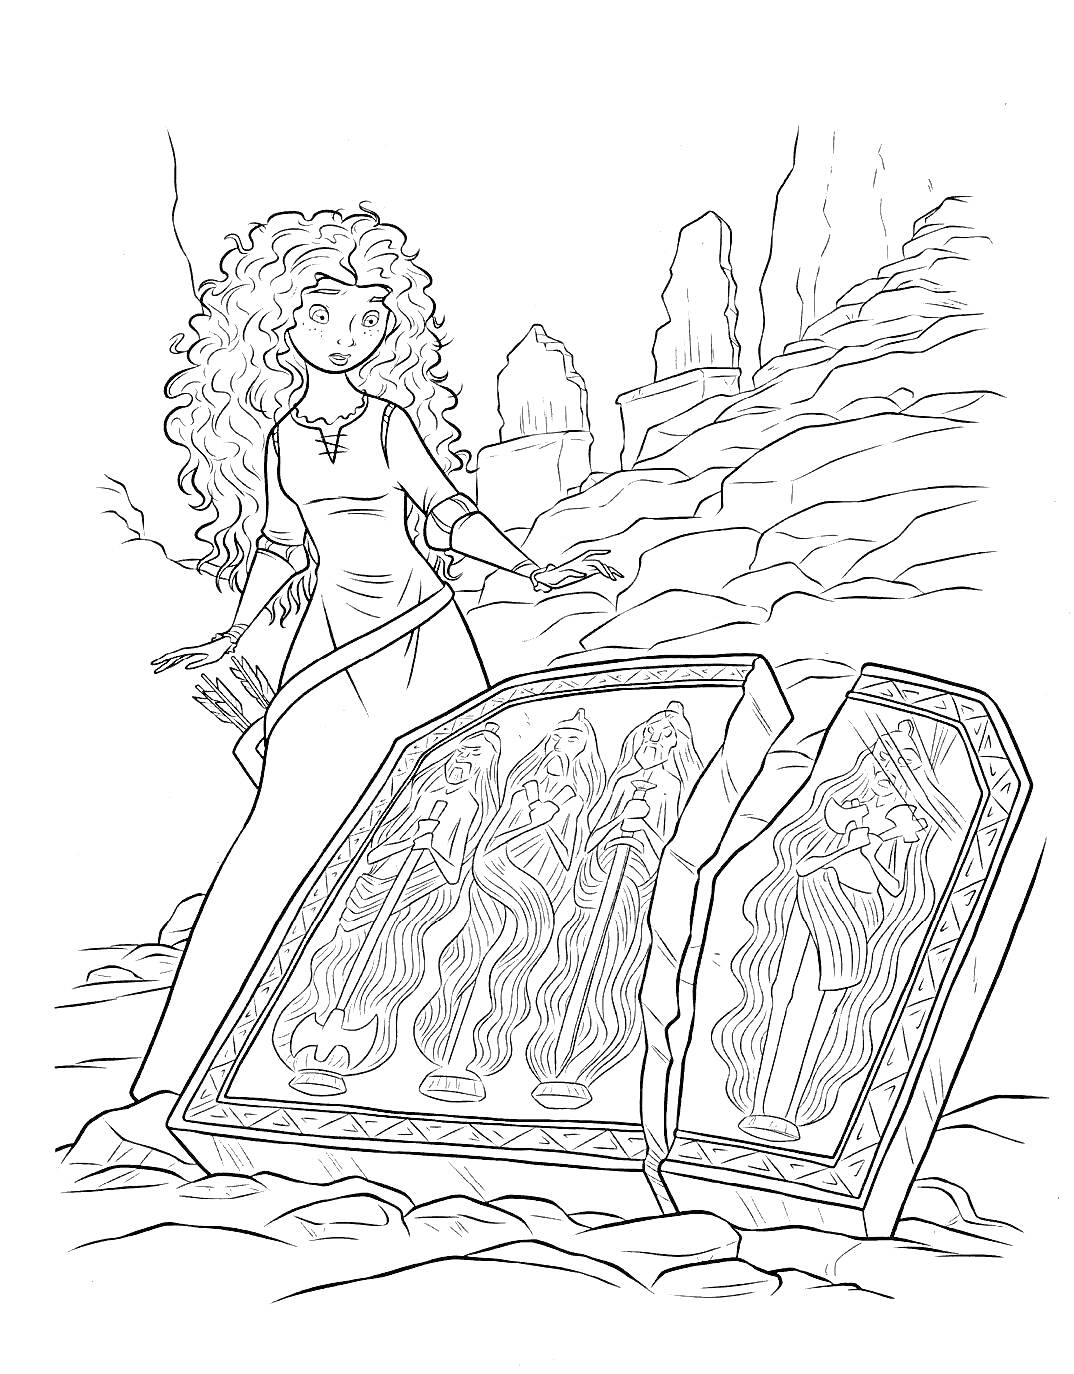 Раскраска Девушка с длинными вьющимися волосами перед сломанной каменной плитой с изображением трёх фигур